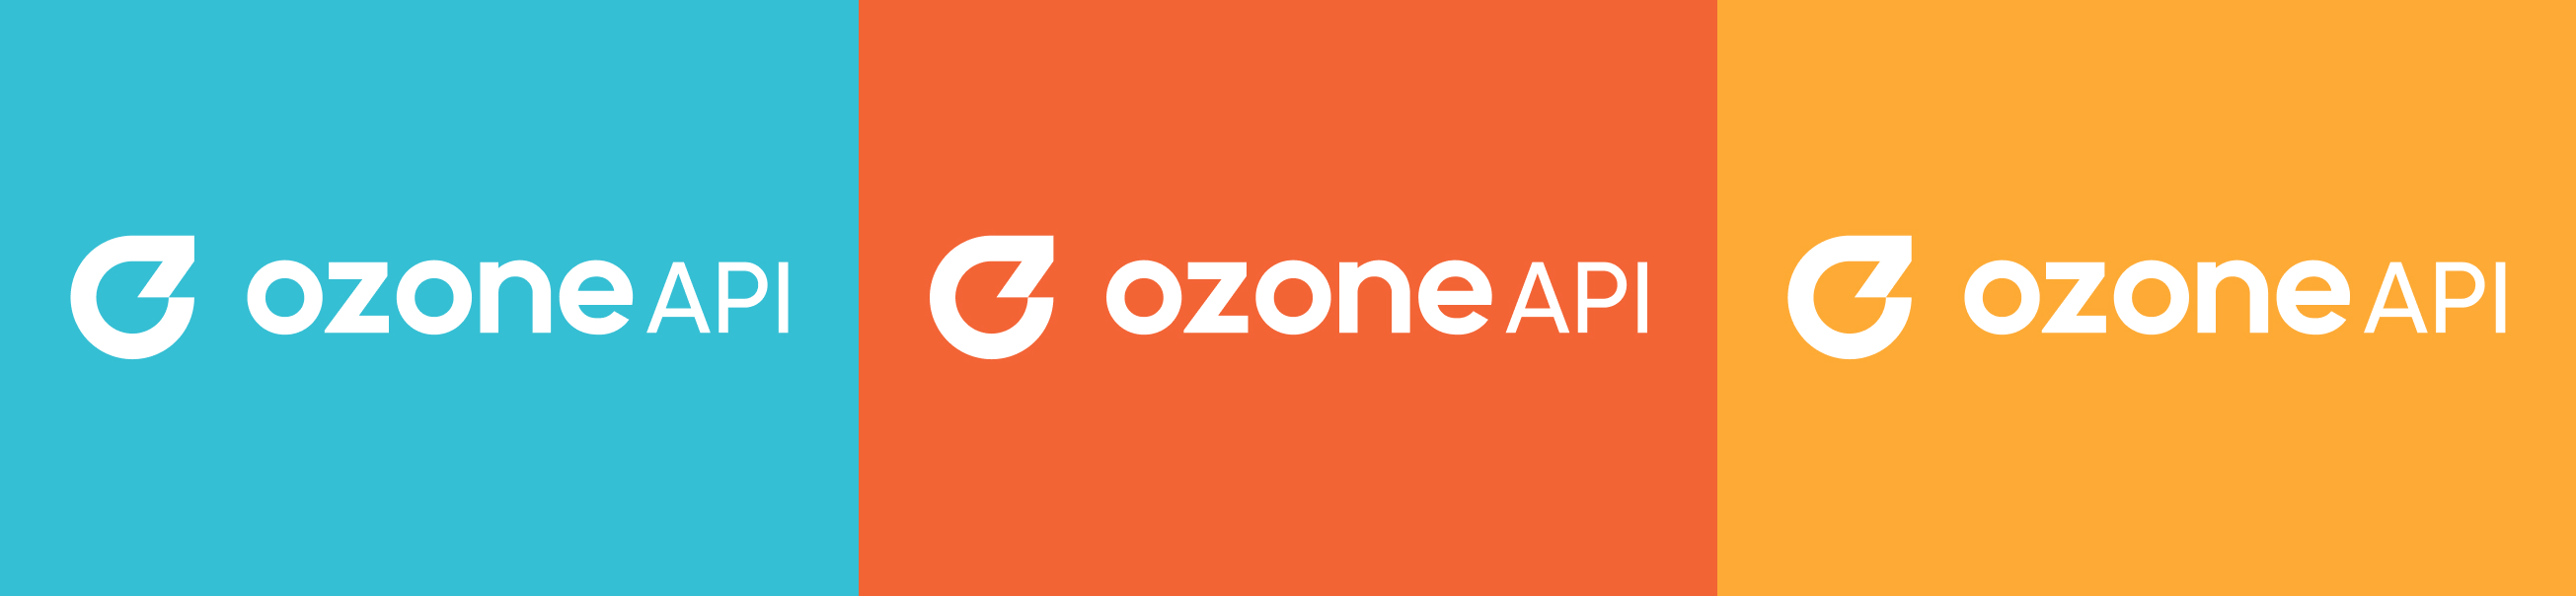 Ozone API -  image-1 - Qubstudio